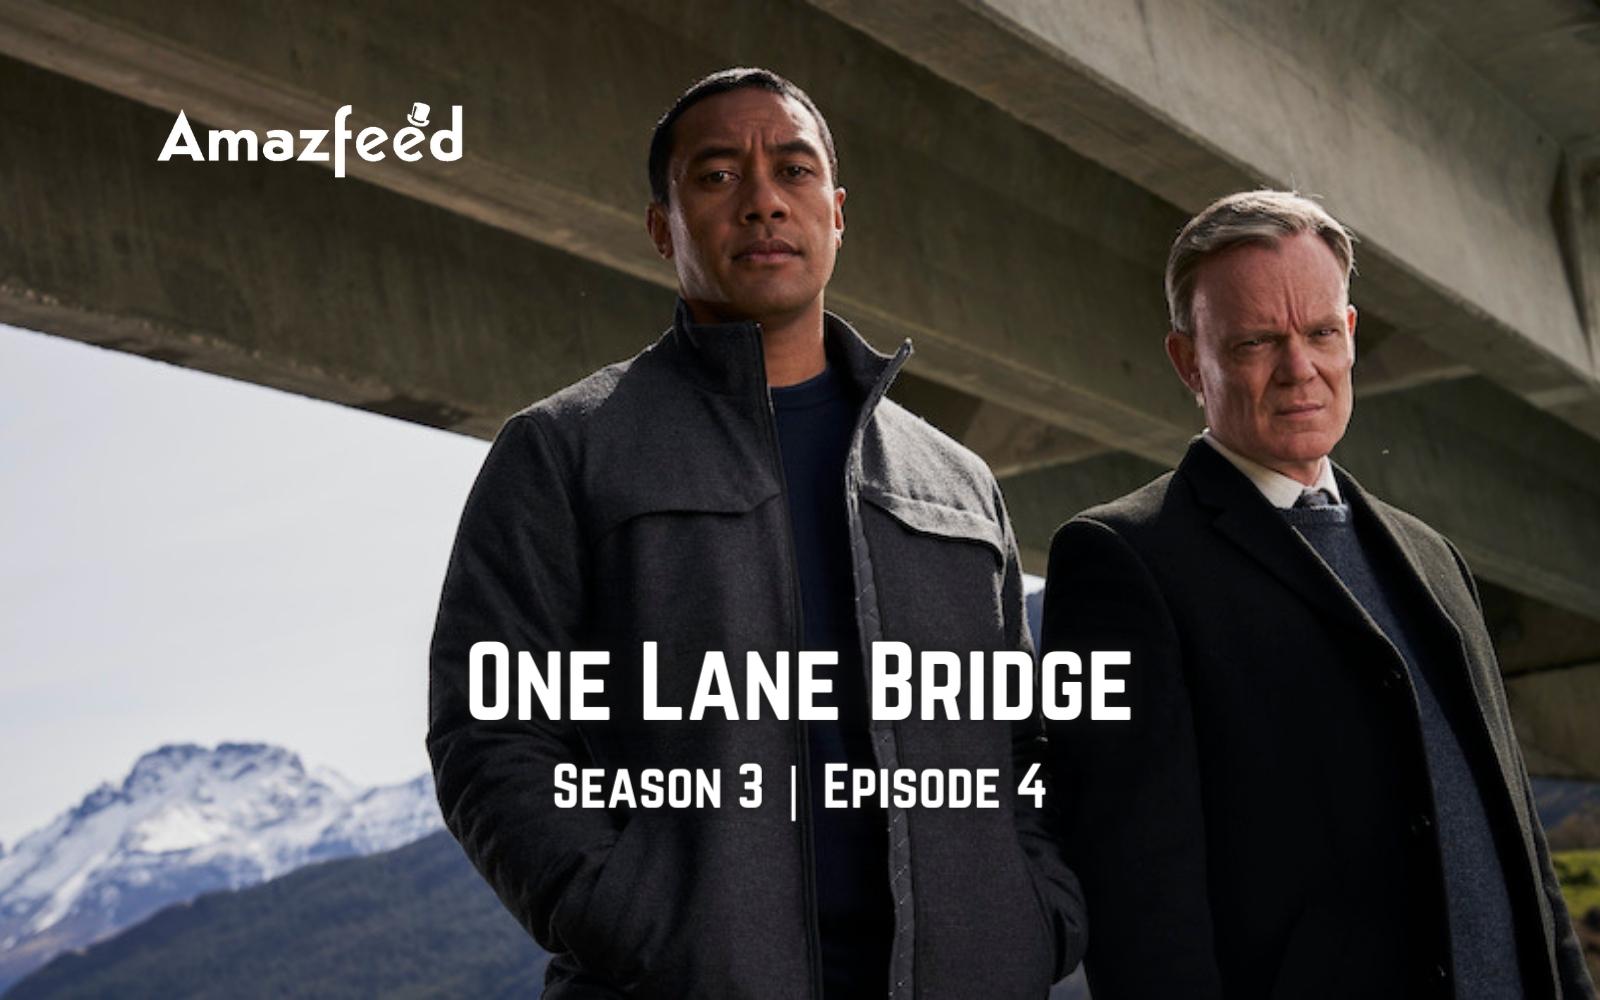 One Lane Bridge Season 4